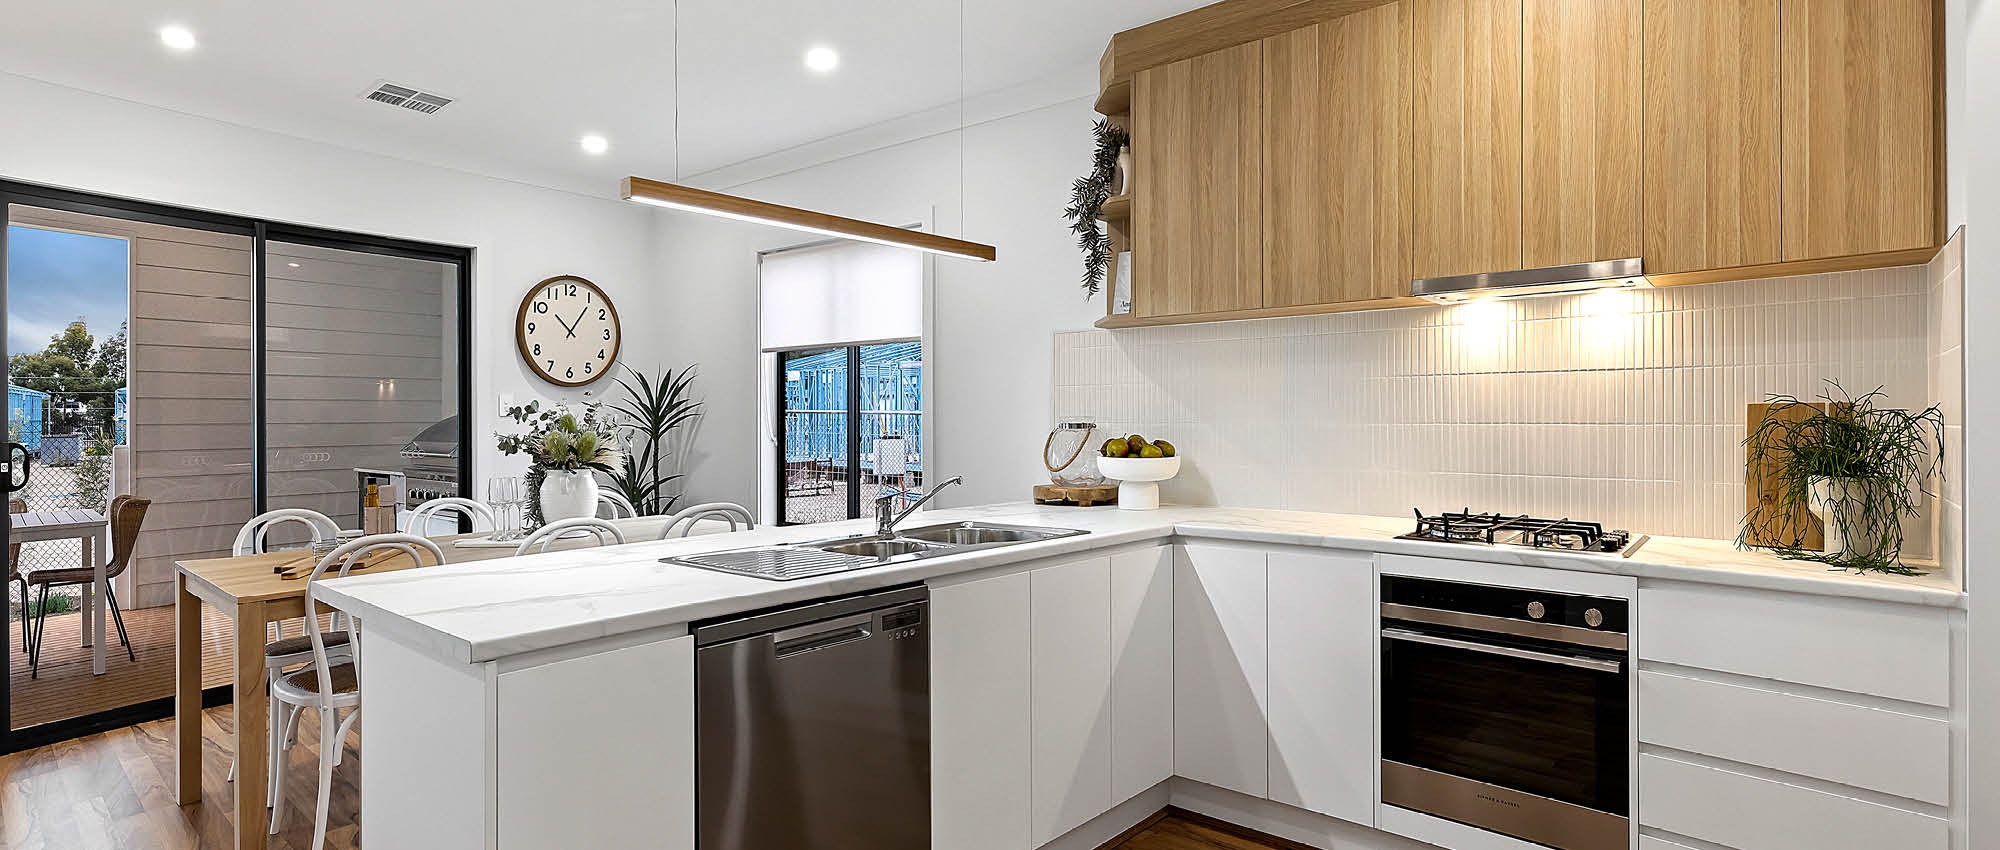 Web-Article-Banner-Image AKORA-functional-modular-kitchen-designs-getaway-display-home-kitchen-2000x850px